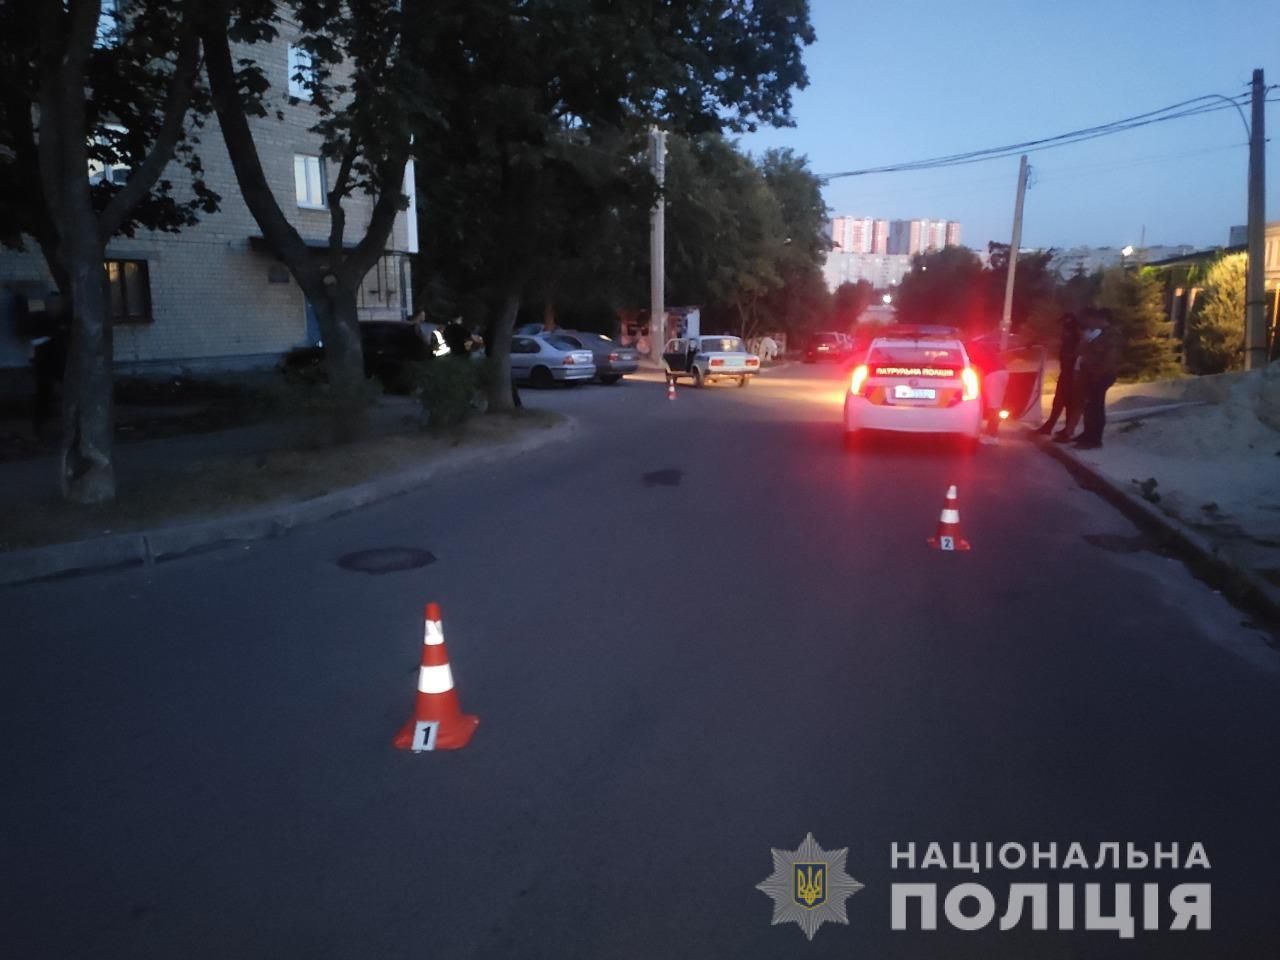 Не заплатил и сделал несколько выстрелов: таксист в Харькове рассказал об опасном клиенте